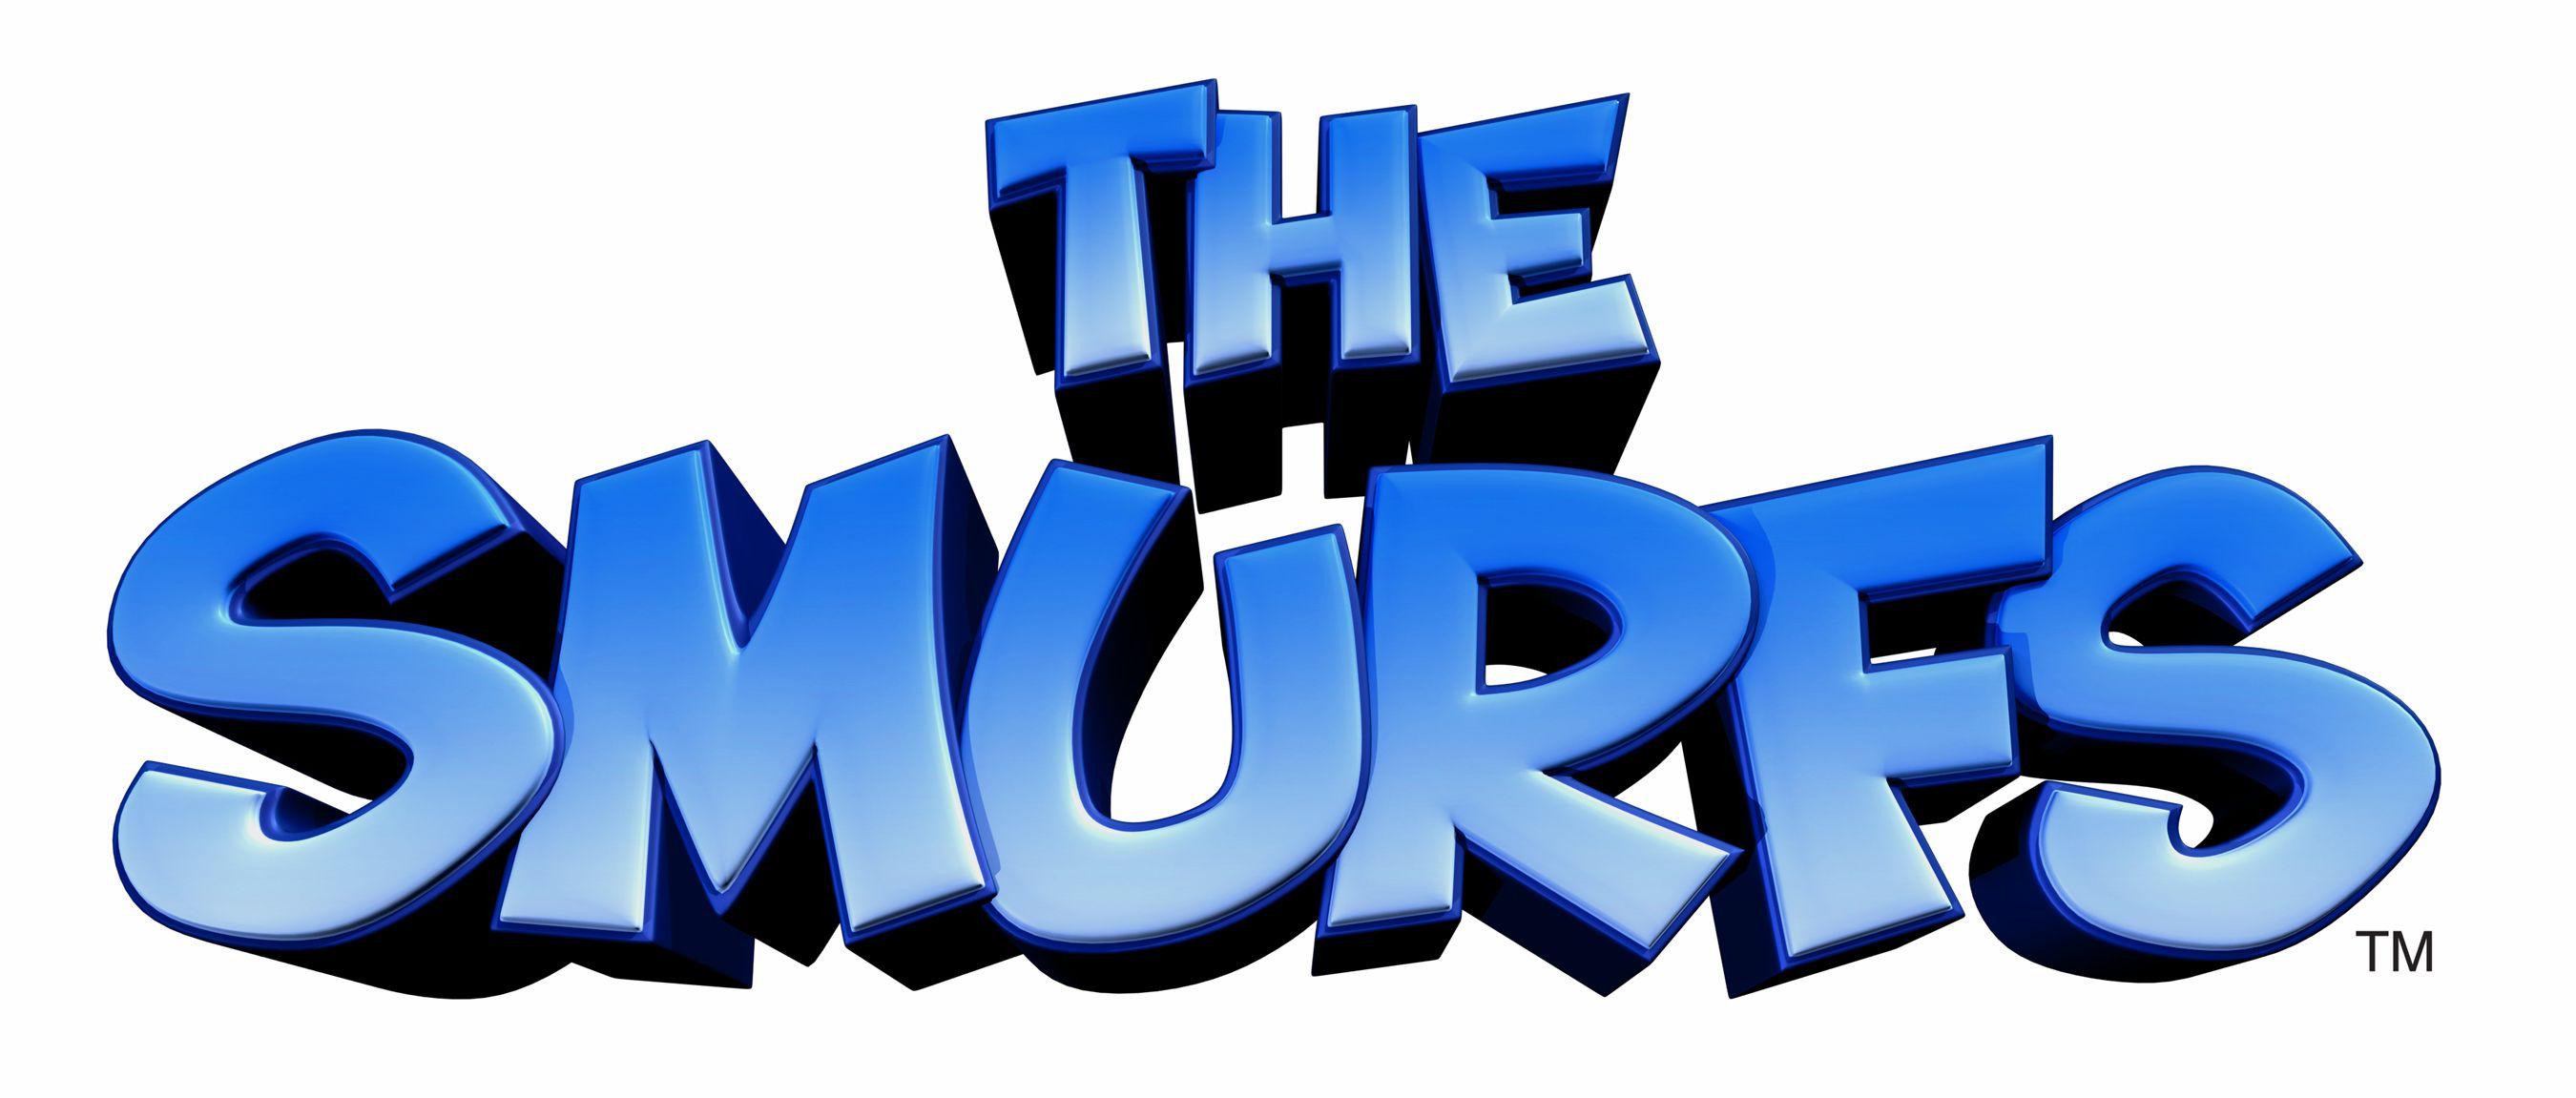 Smurfs Logo - The Smurfs Logo HD Wallpaper for Phone